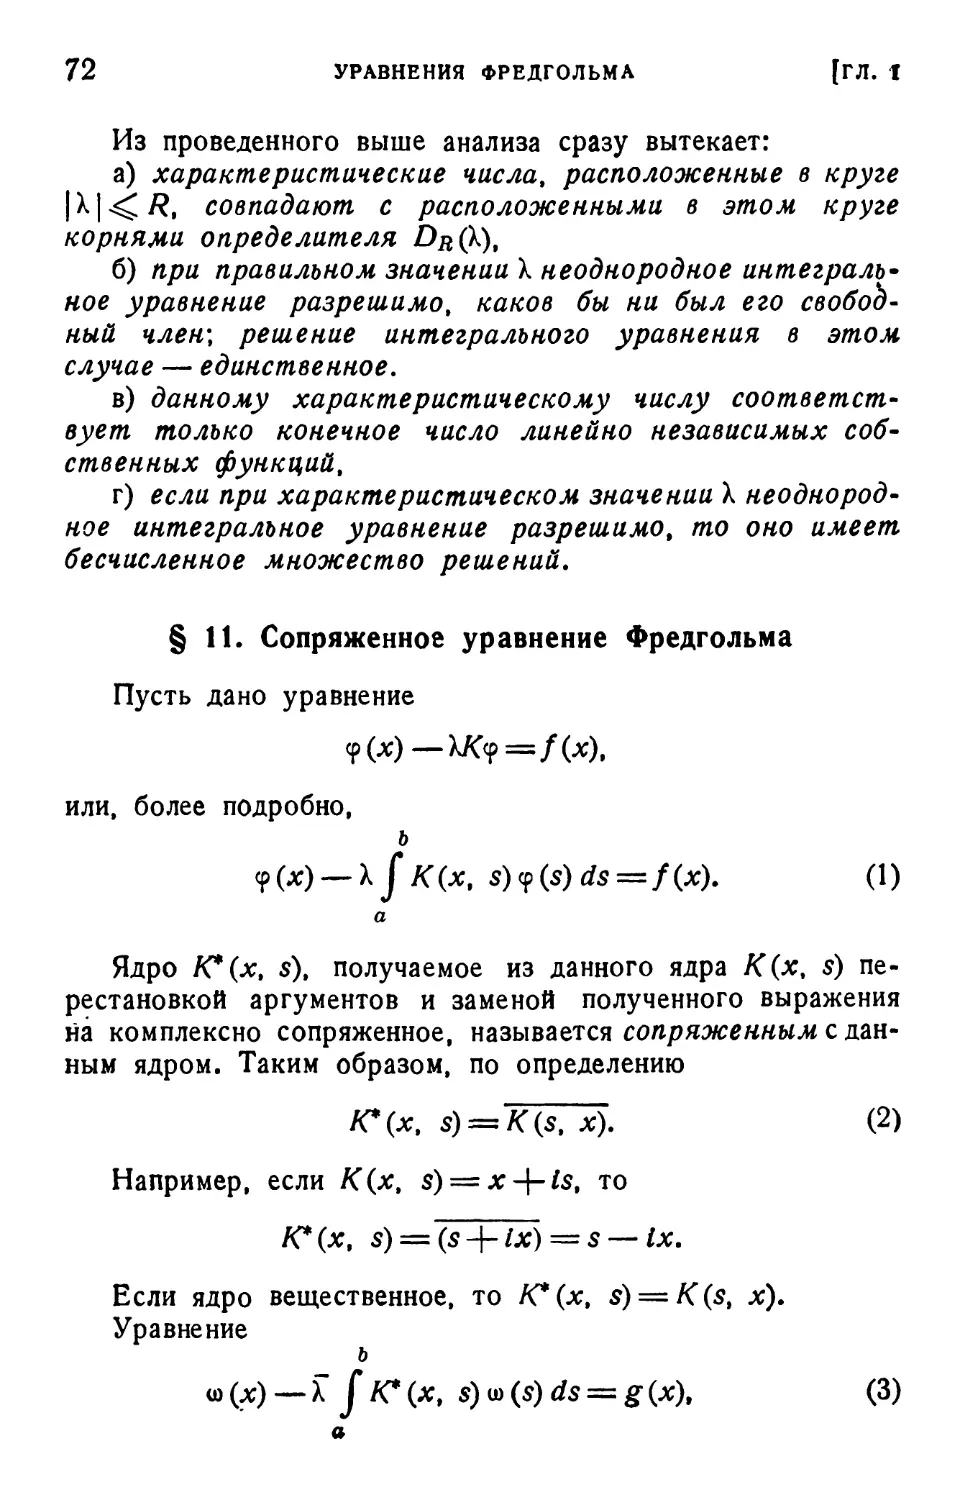 § 11. Сопряженное уравнение Фредгольма